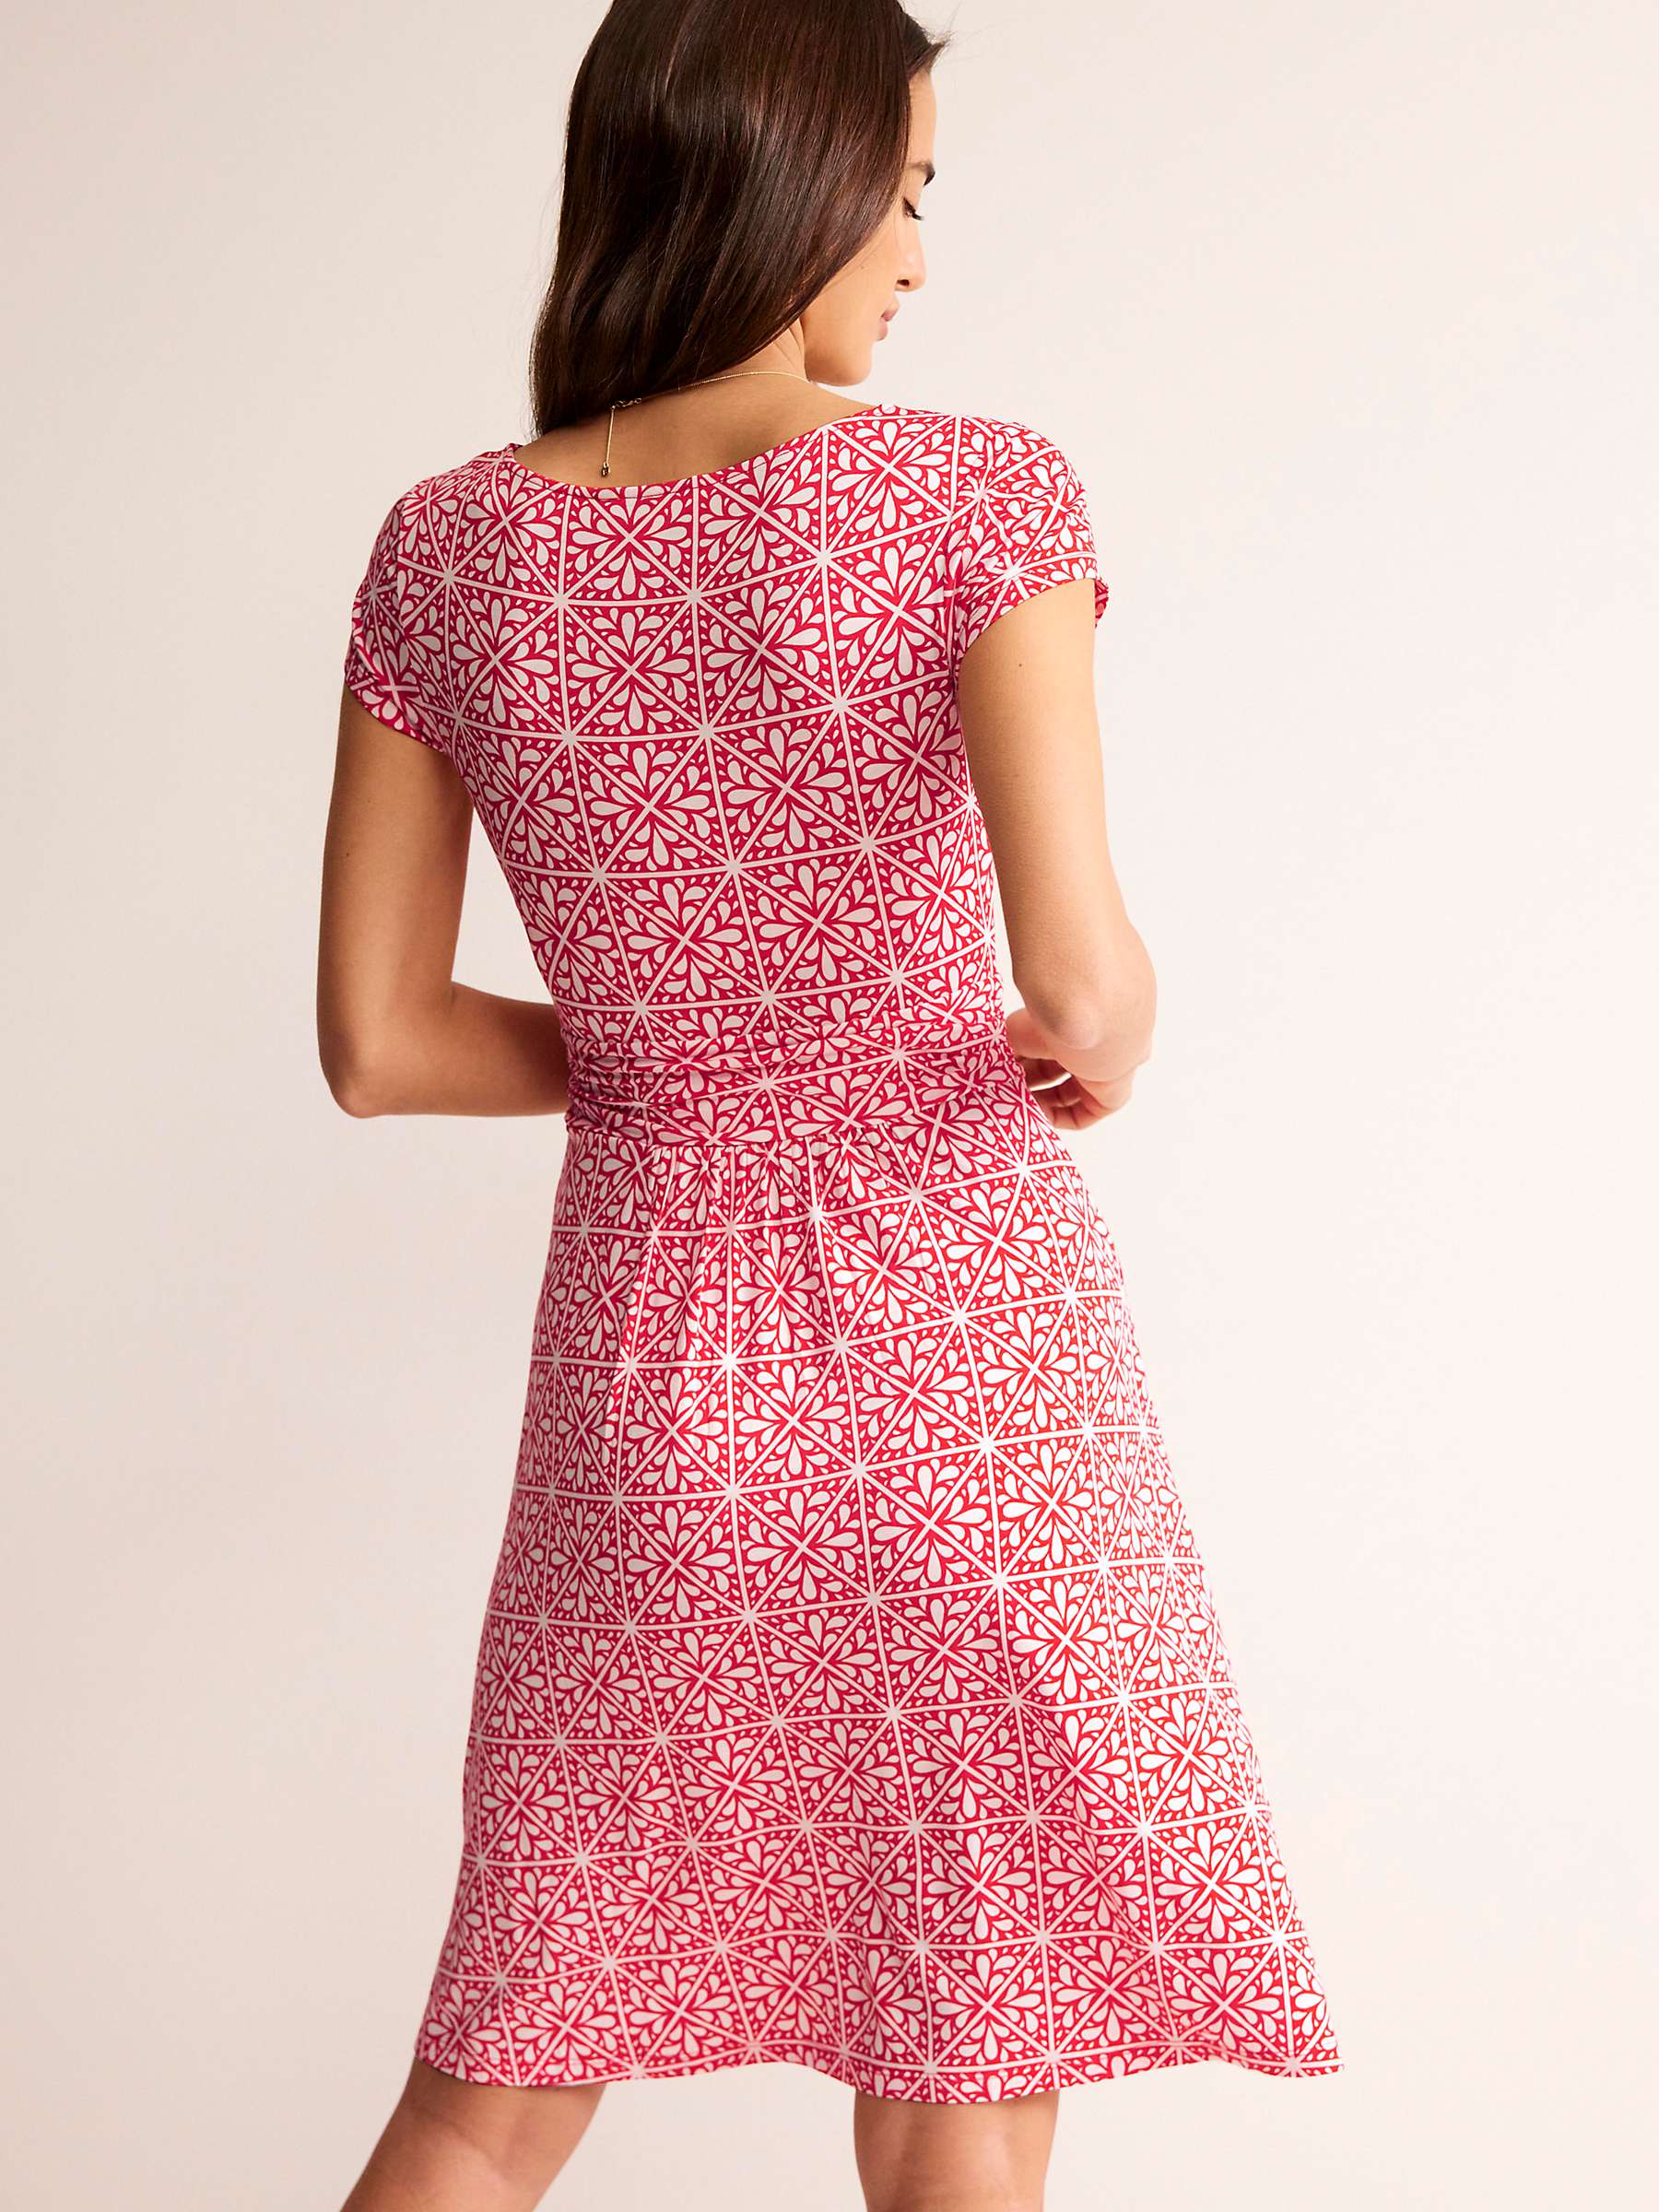 Buy Boden Amelie Floral Jersey Dress, Scarlet/White Online at johnlewis.com